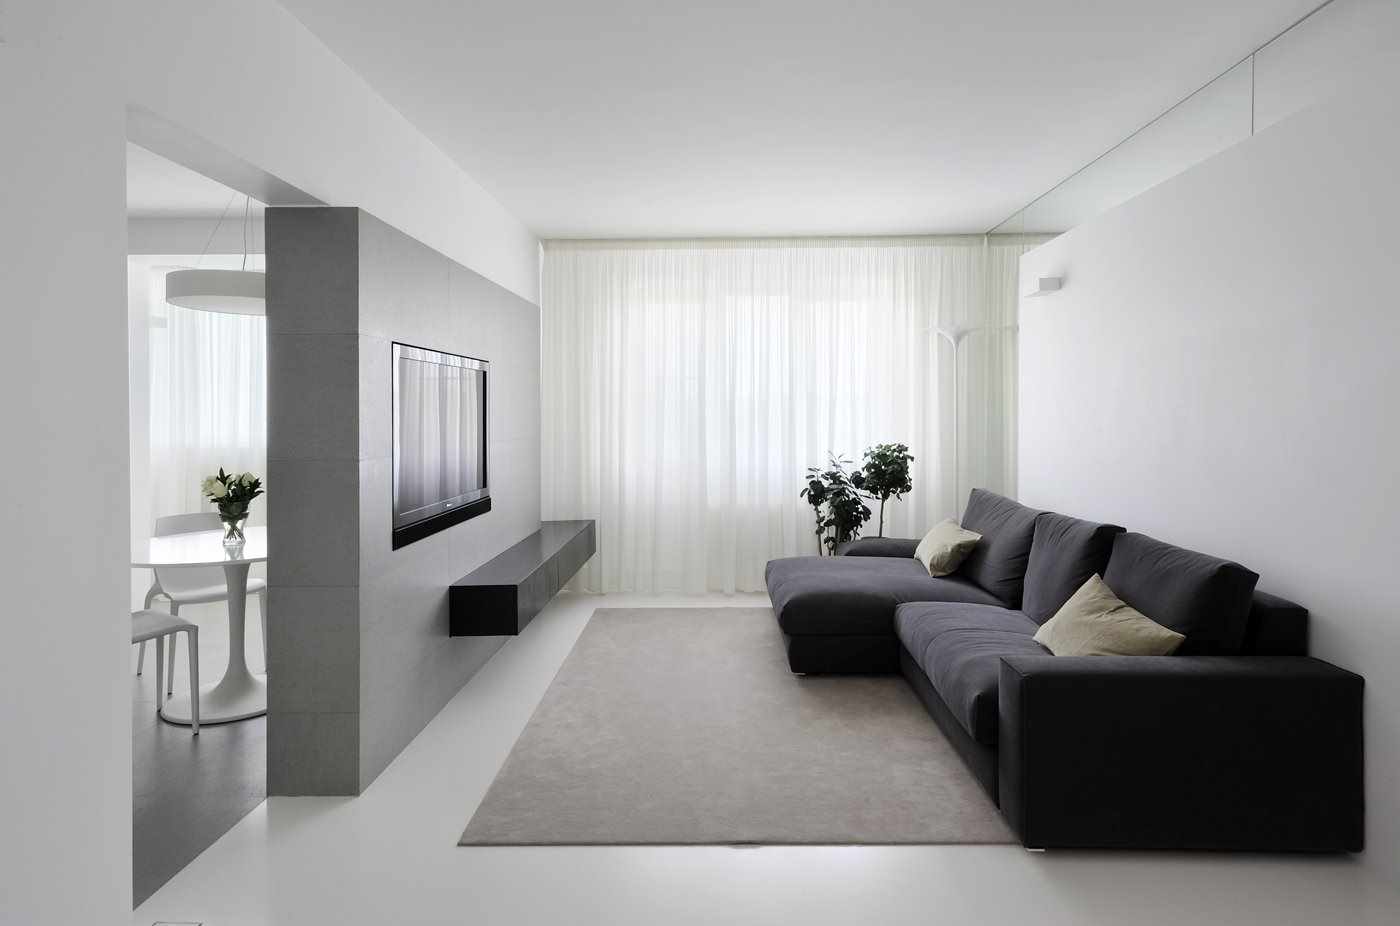 idén att använda en ljus inredning i ett vardagsrum i minimalistisk stil